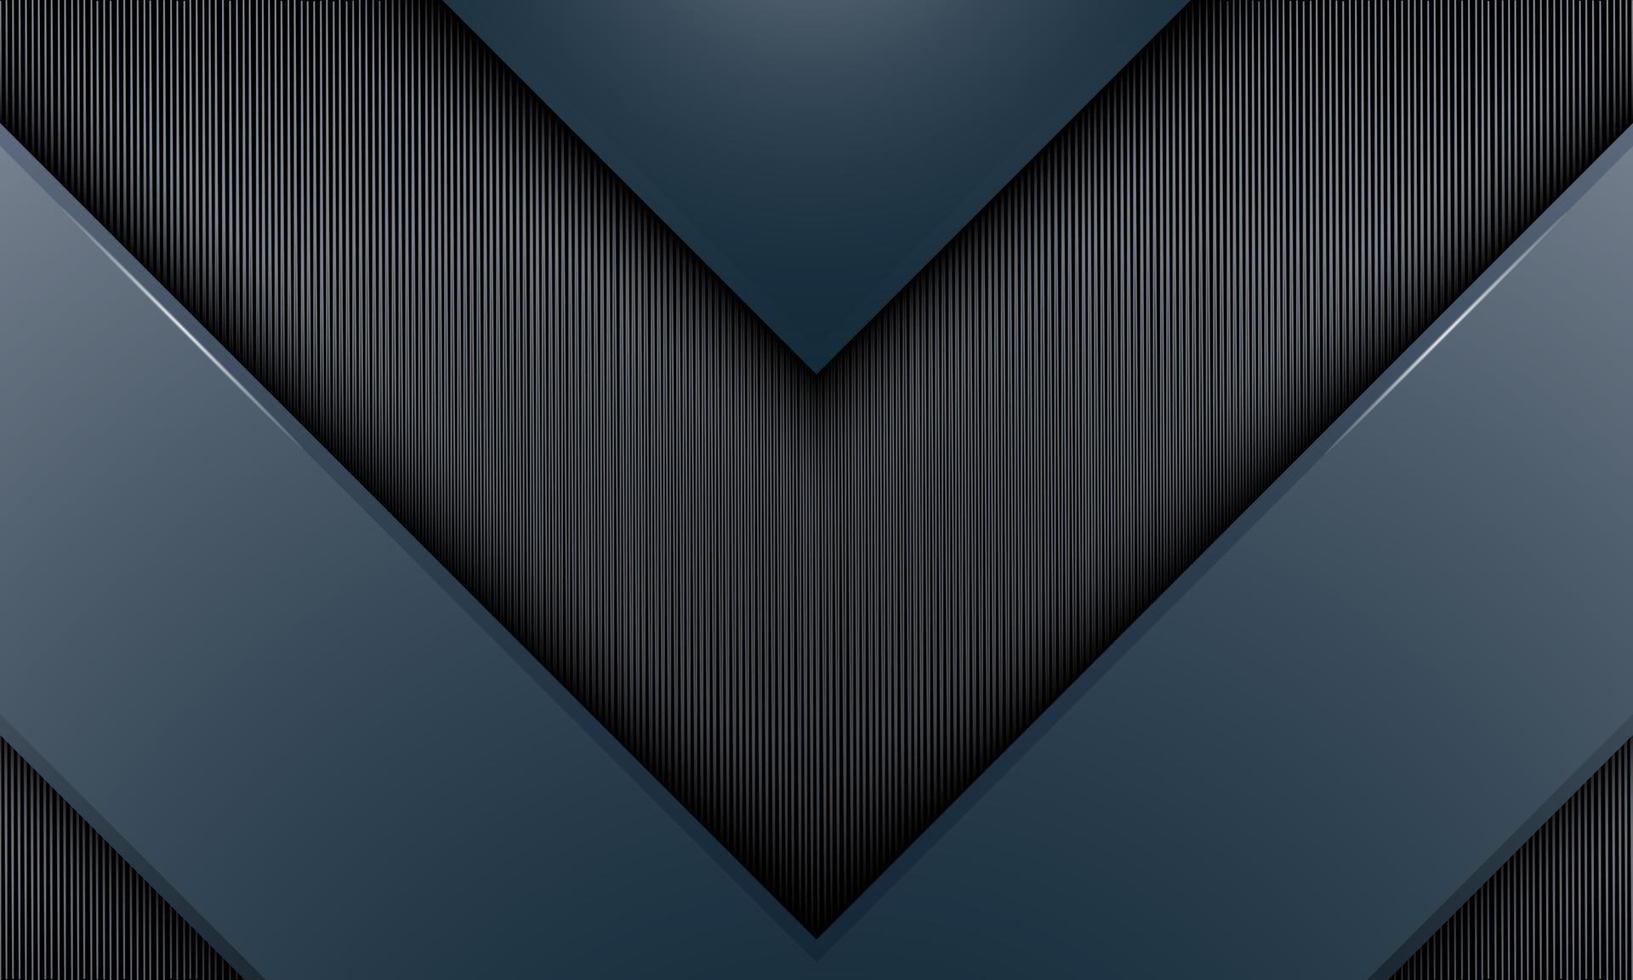 abstrakt grå bakgrund med ränder och triangelformer. vektor illustration.